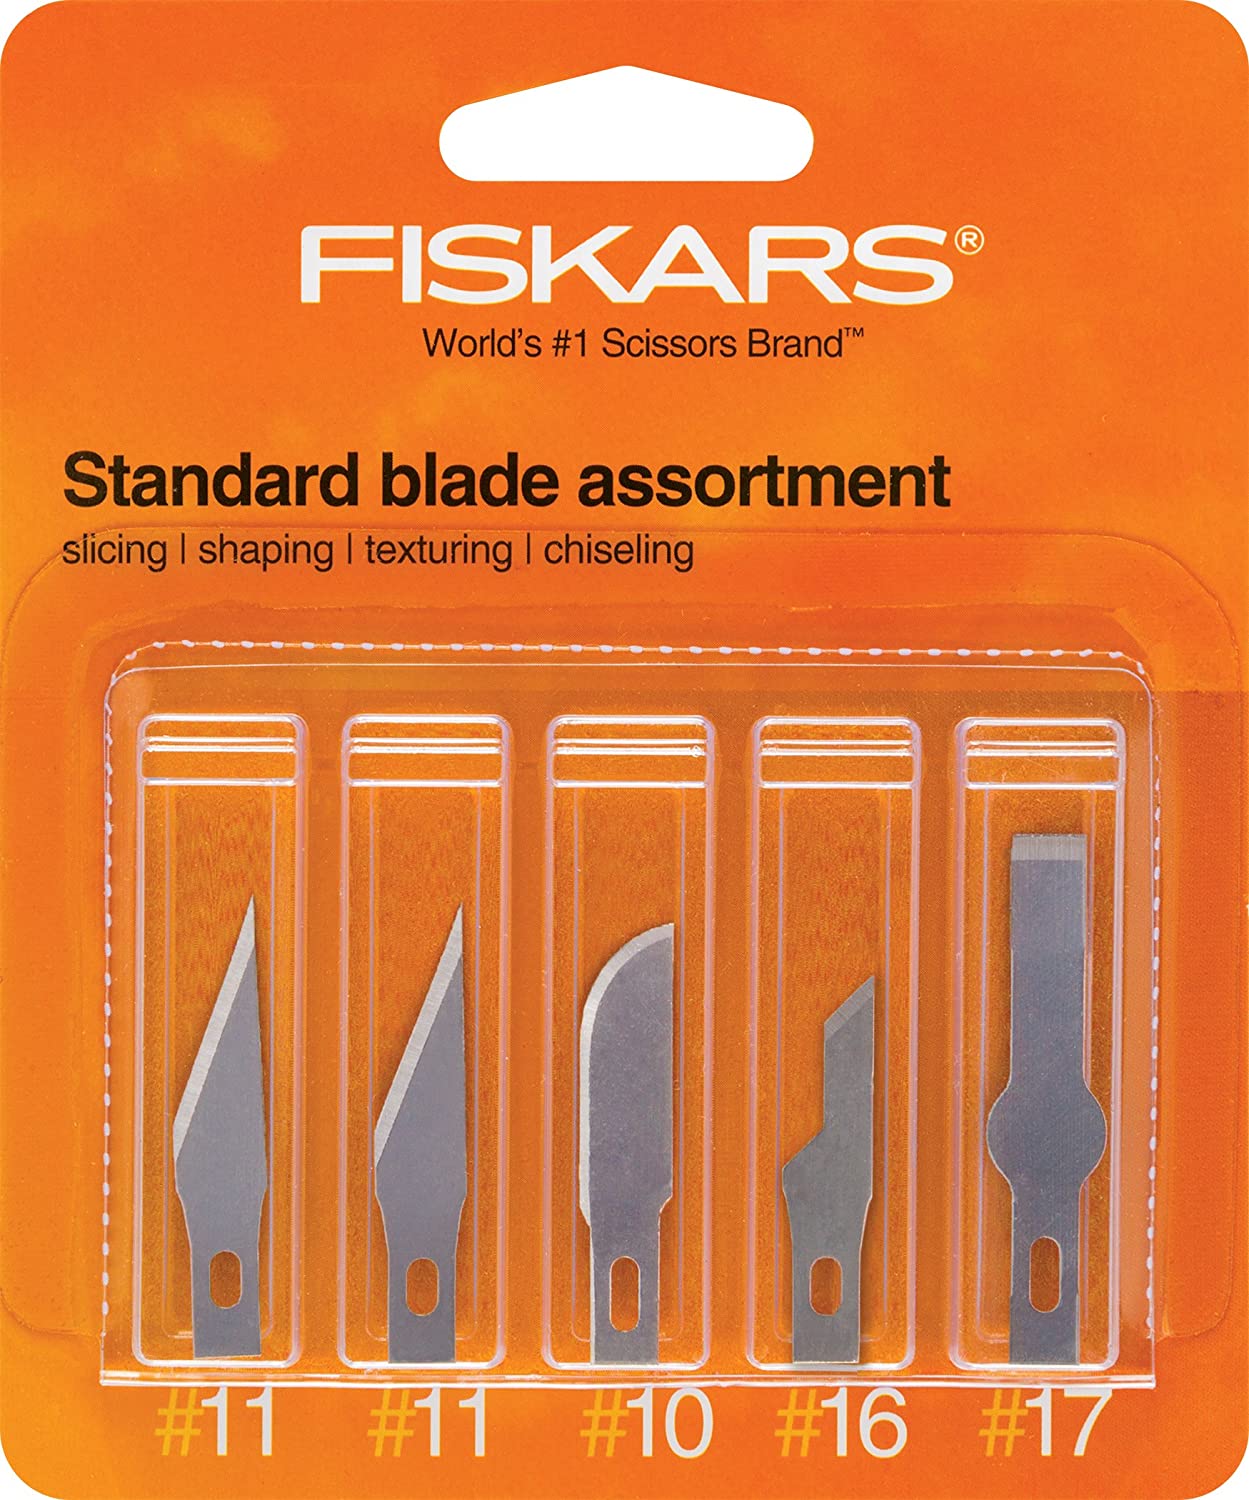 Fiskars 164190-1001 Standard Assortment Blades(2 Number.11,1 Number.10, 1 Number.16, 1 Number.17), 5